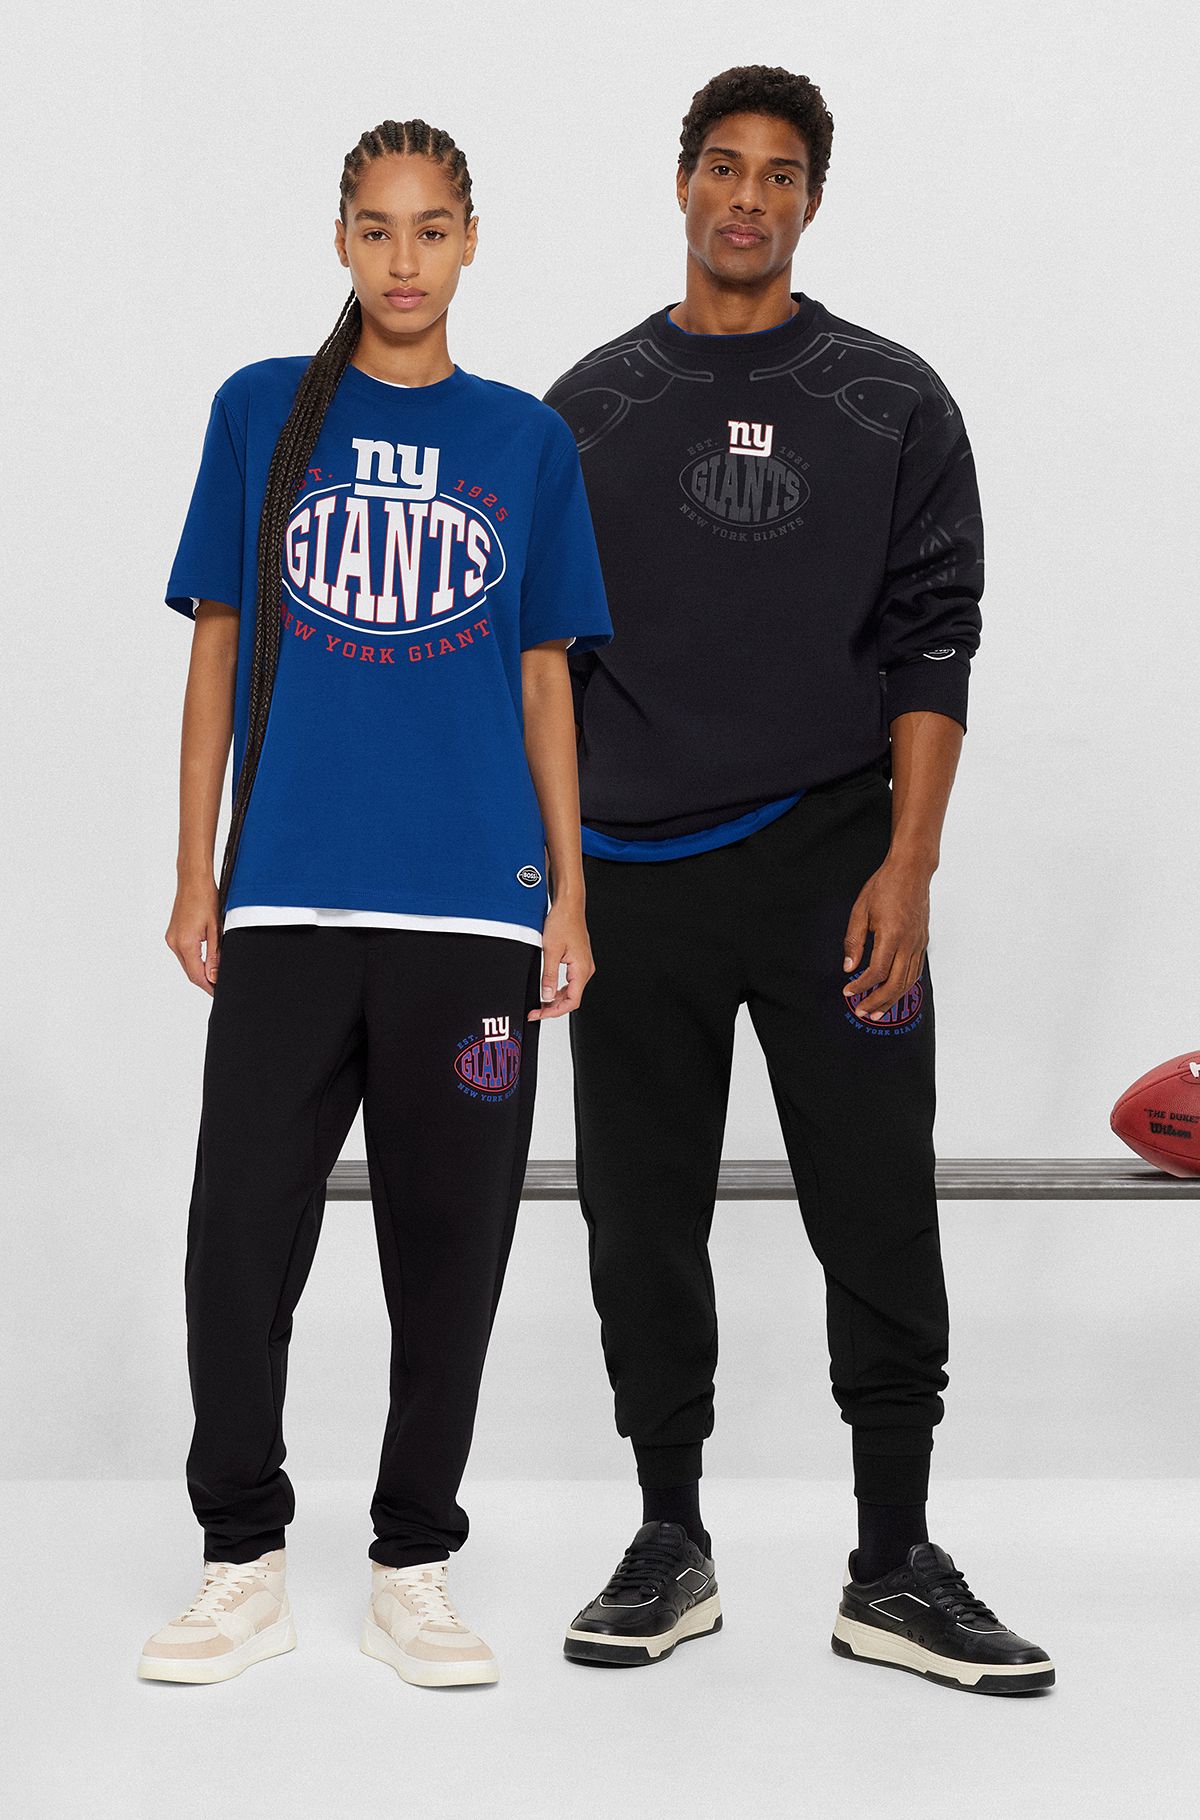 Bas de survêtement BOSS x NFL en coton mélangé avec logo du partenariat, Giants